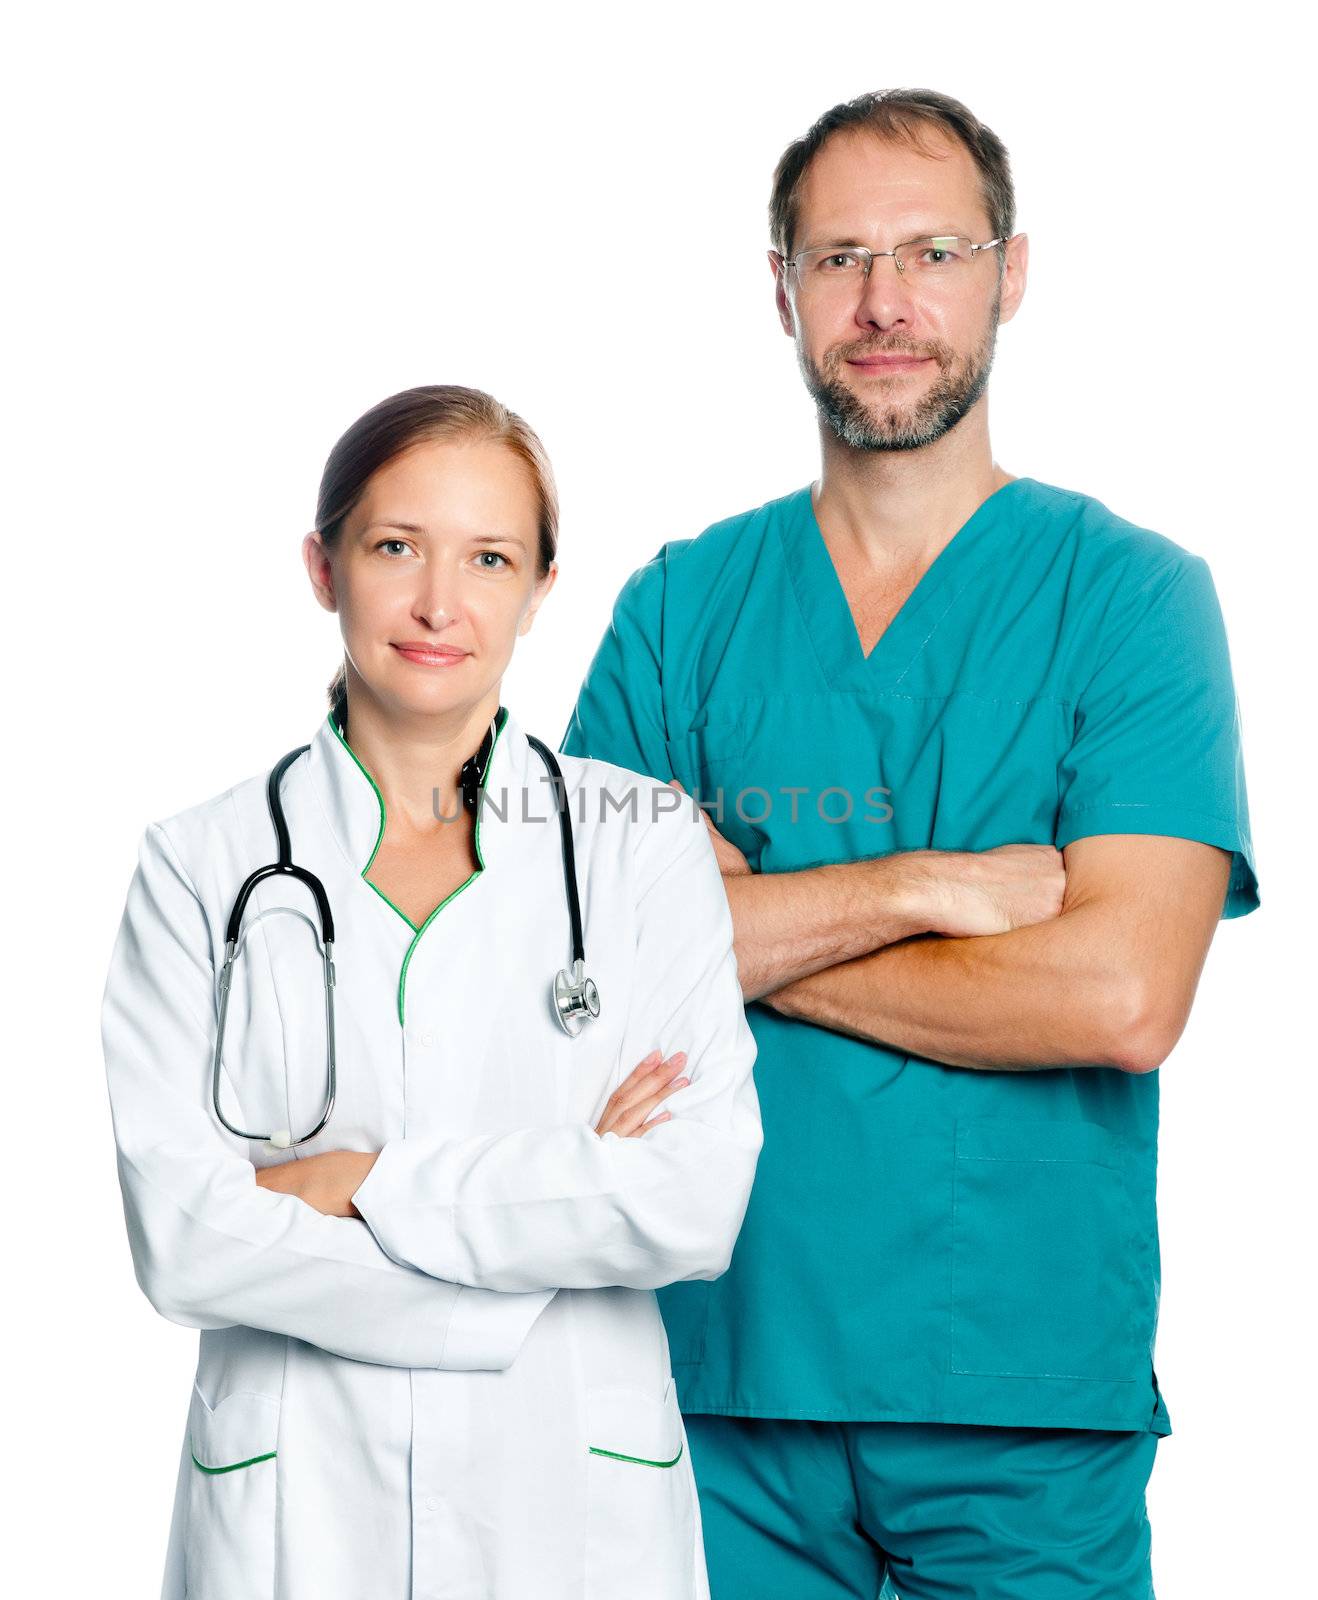 doctors by GekaSkr